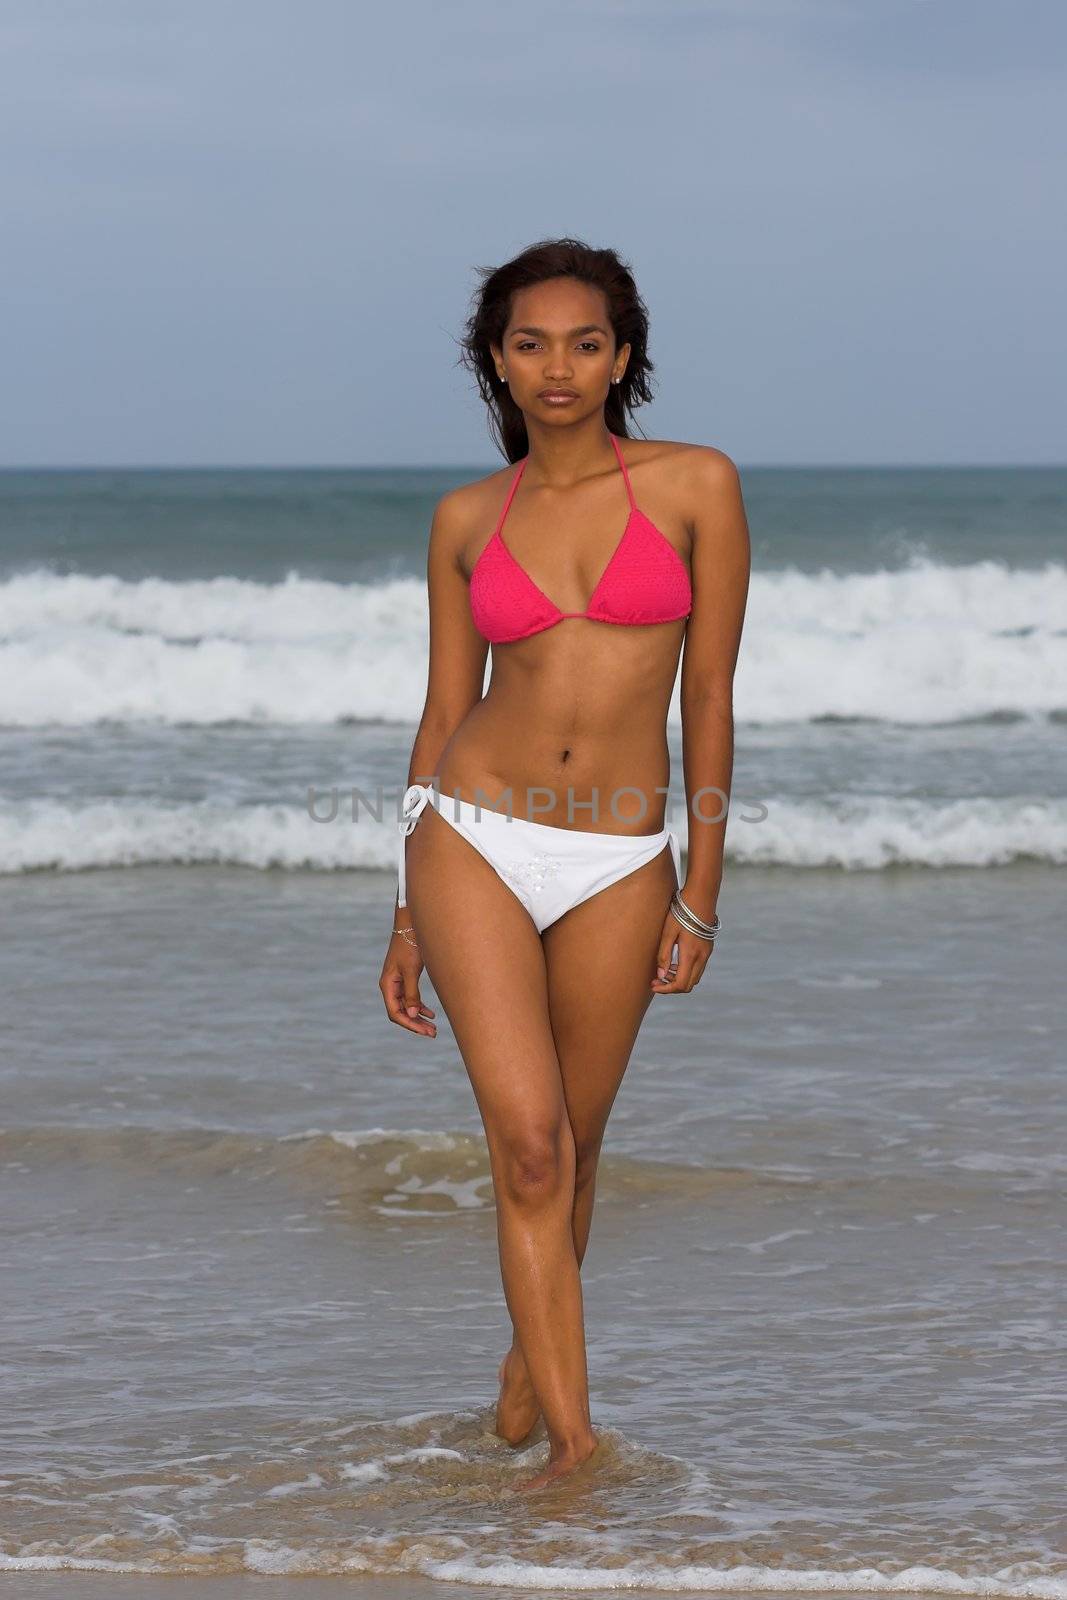 Ethnic Bikini model wearing pink and white bikini